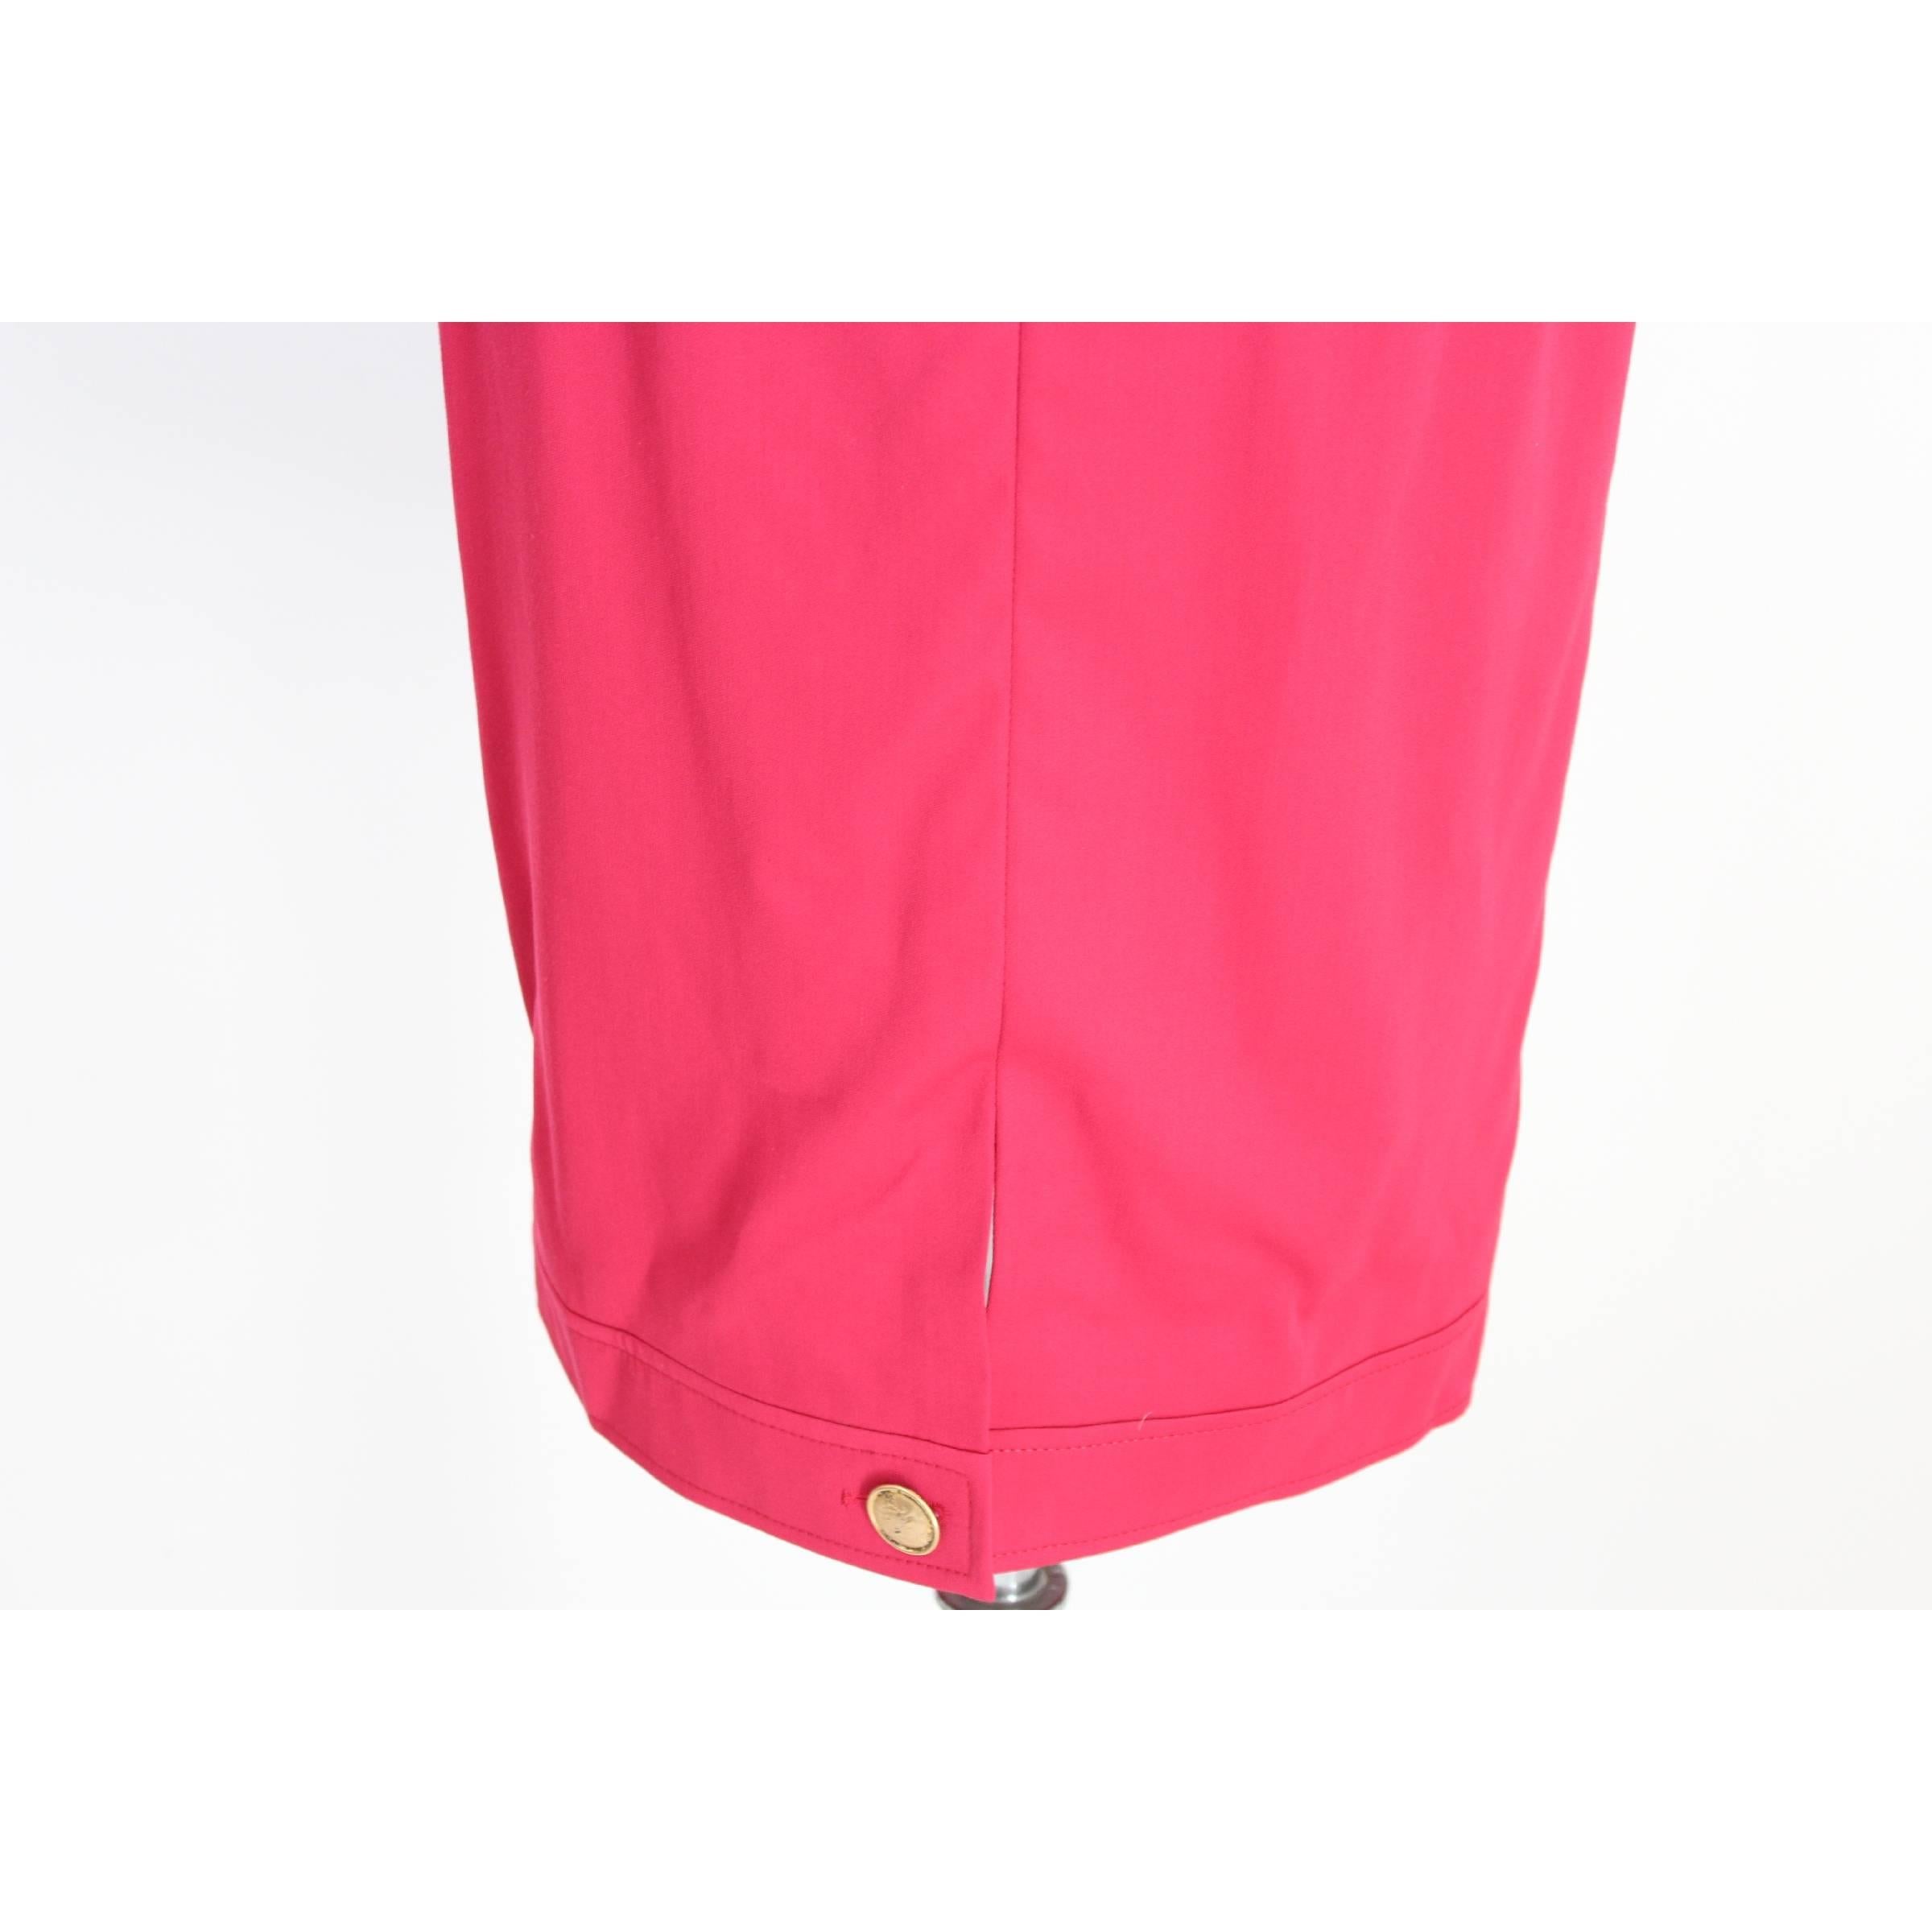 Mario Borsato Suit Skirt Fuchsia Wool Italian Jacket Tailleur, 1980s  For Sale 2